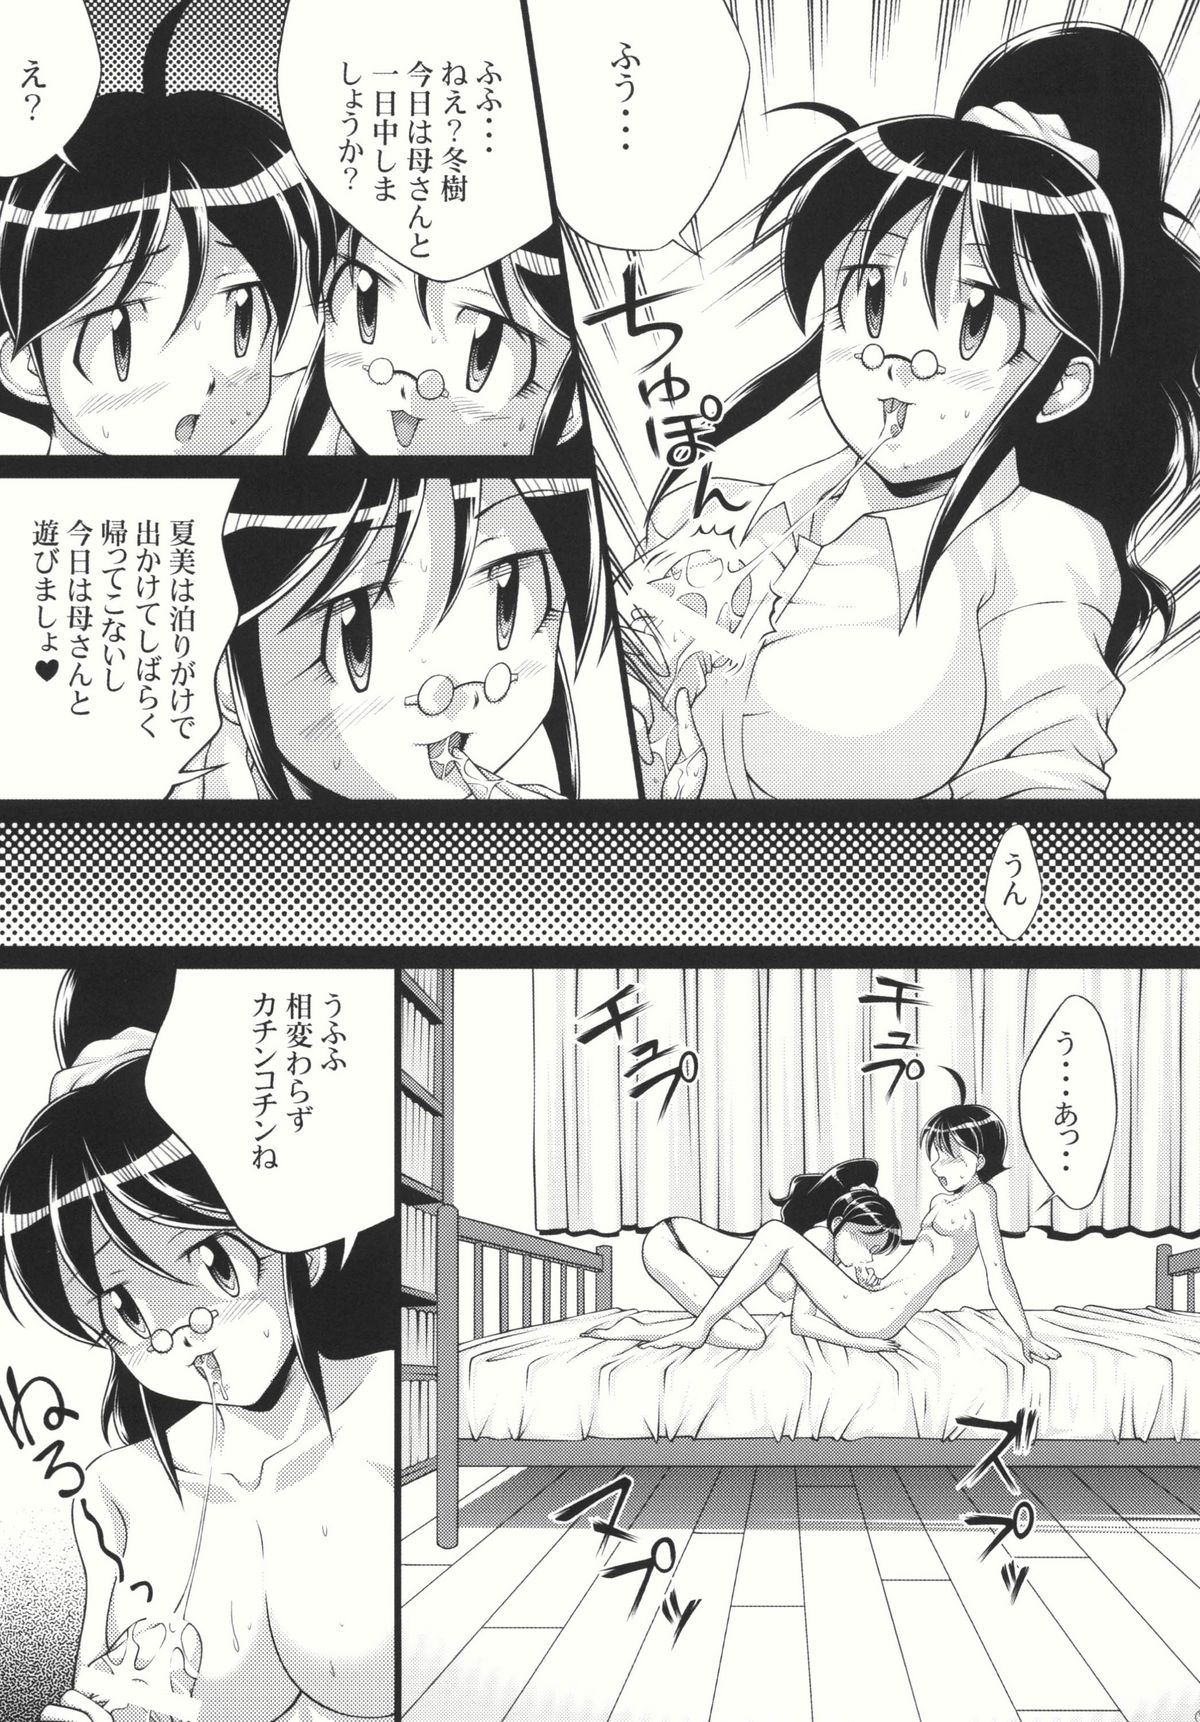 (SC38) [Light Pink (Various)] Chikyuujin Maruhi Seitai Chousa Houkokusho 4 (Keroro Gunsou [Sgt. Frog]) page 9 full